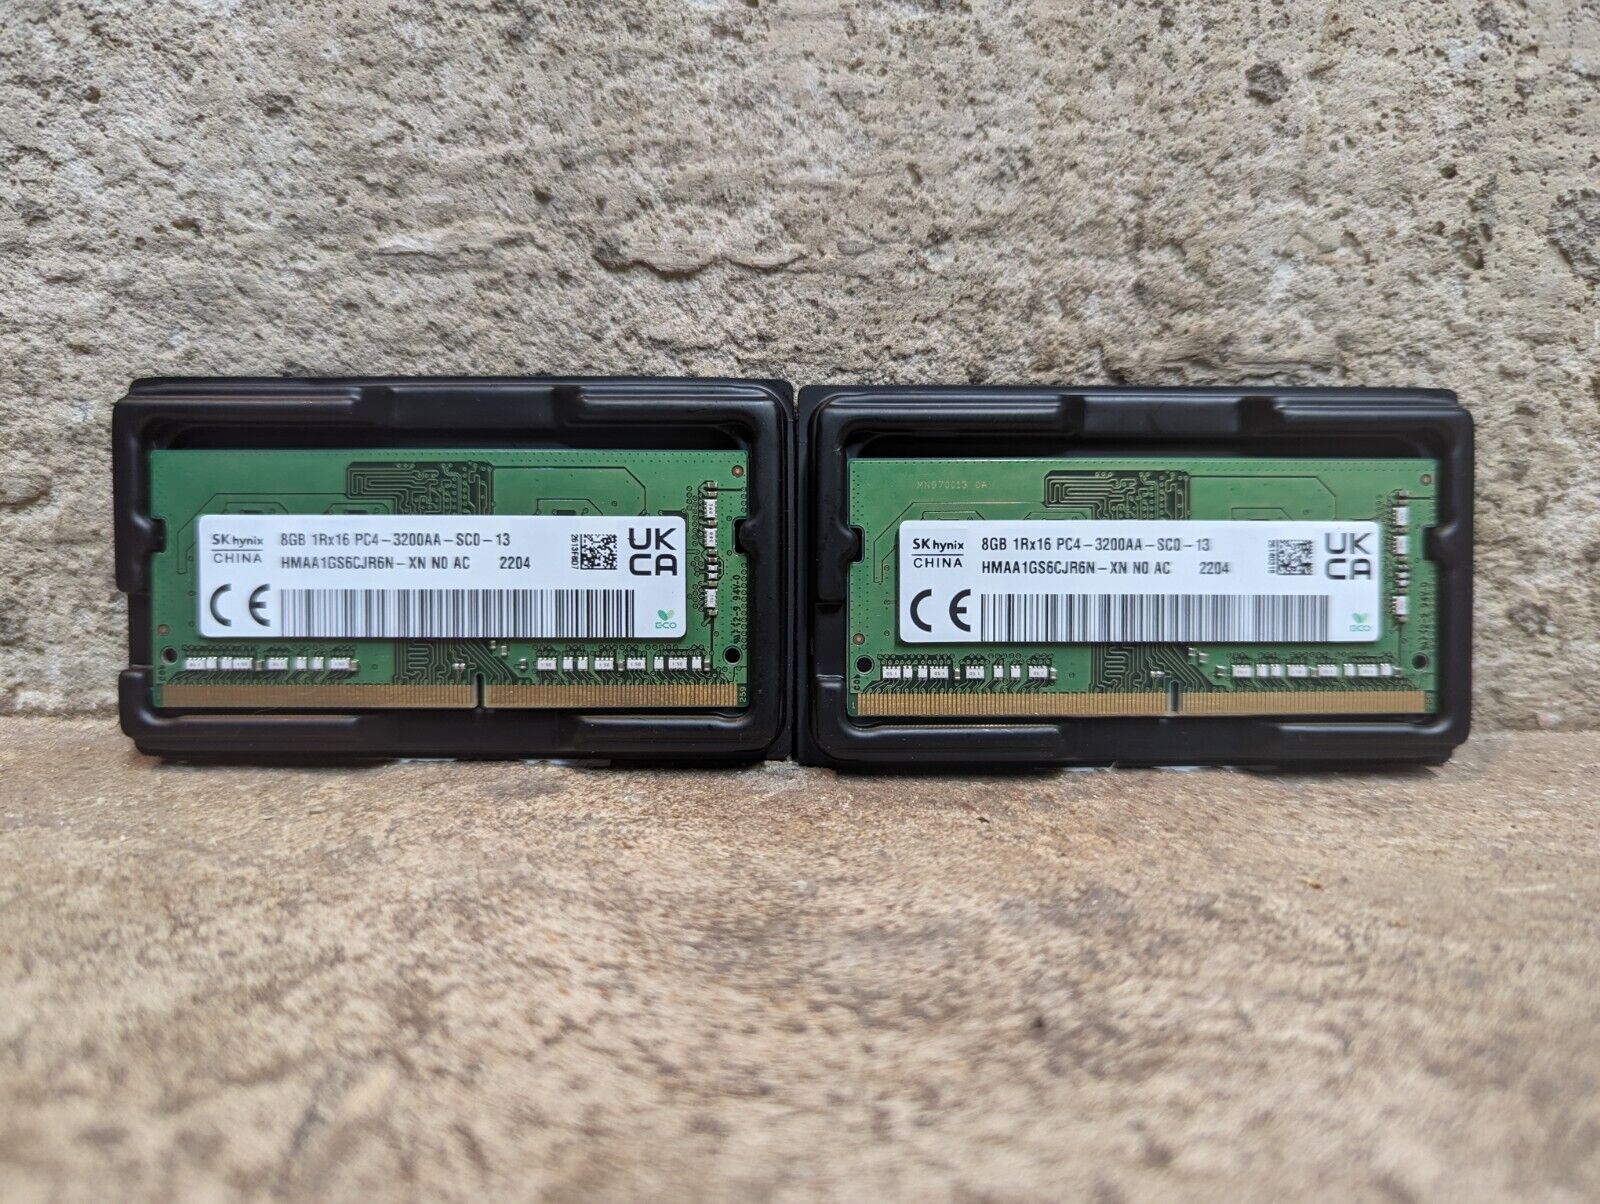 SK Hynix 16GB Kit (2x8GB) 1Rx16 PC4-3200AA DDR4 SODIMM (HMAA1GS6CJR6N-XN)